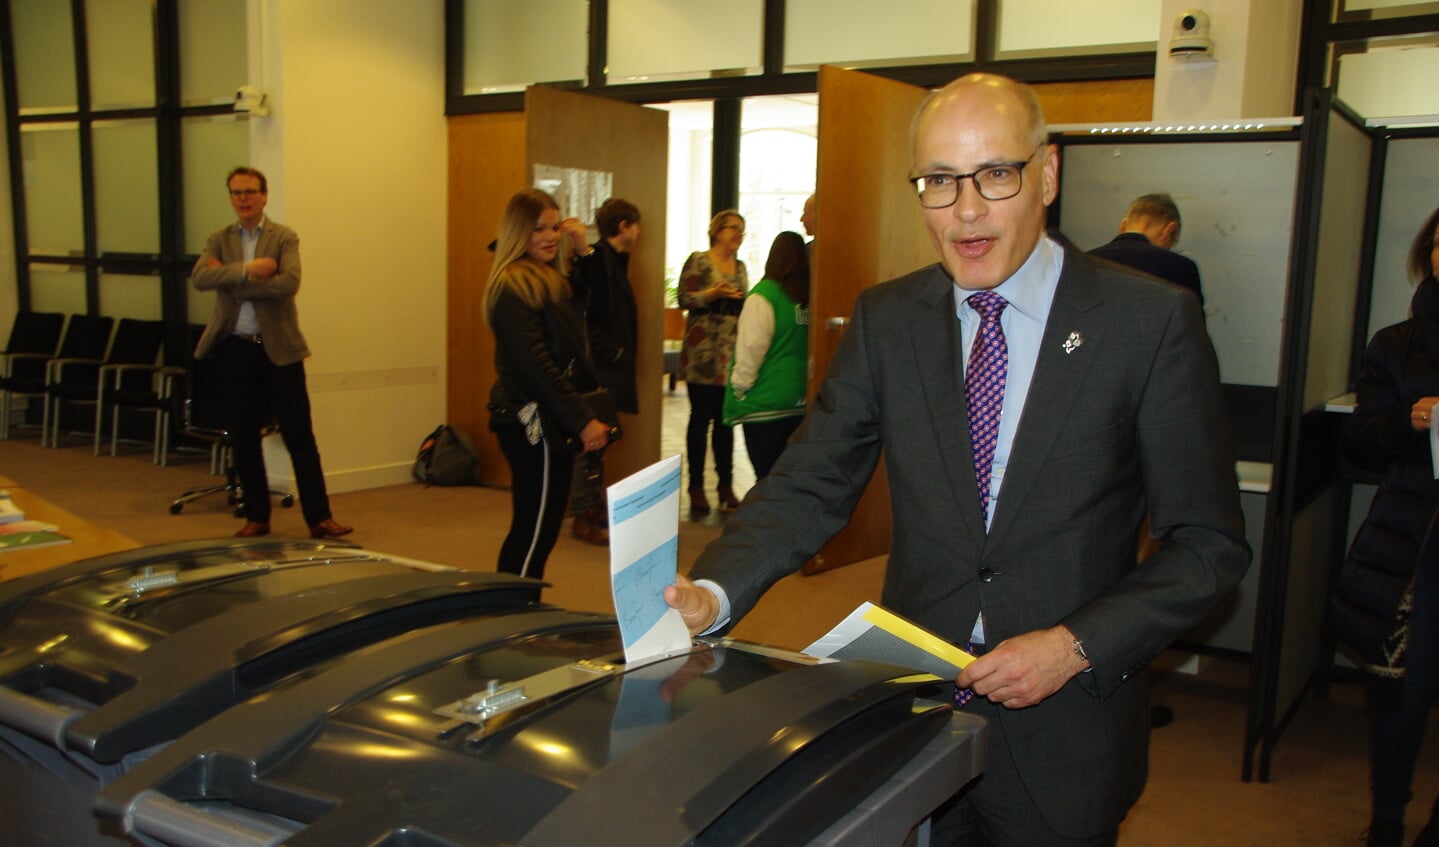 Burgemeester Jaensch brengt zijn stem uit. | Foto Willemien Timmers